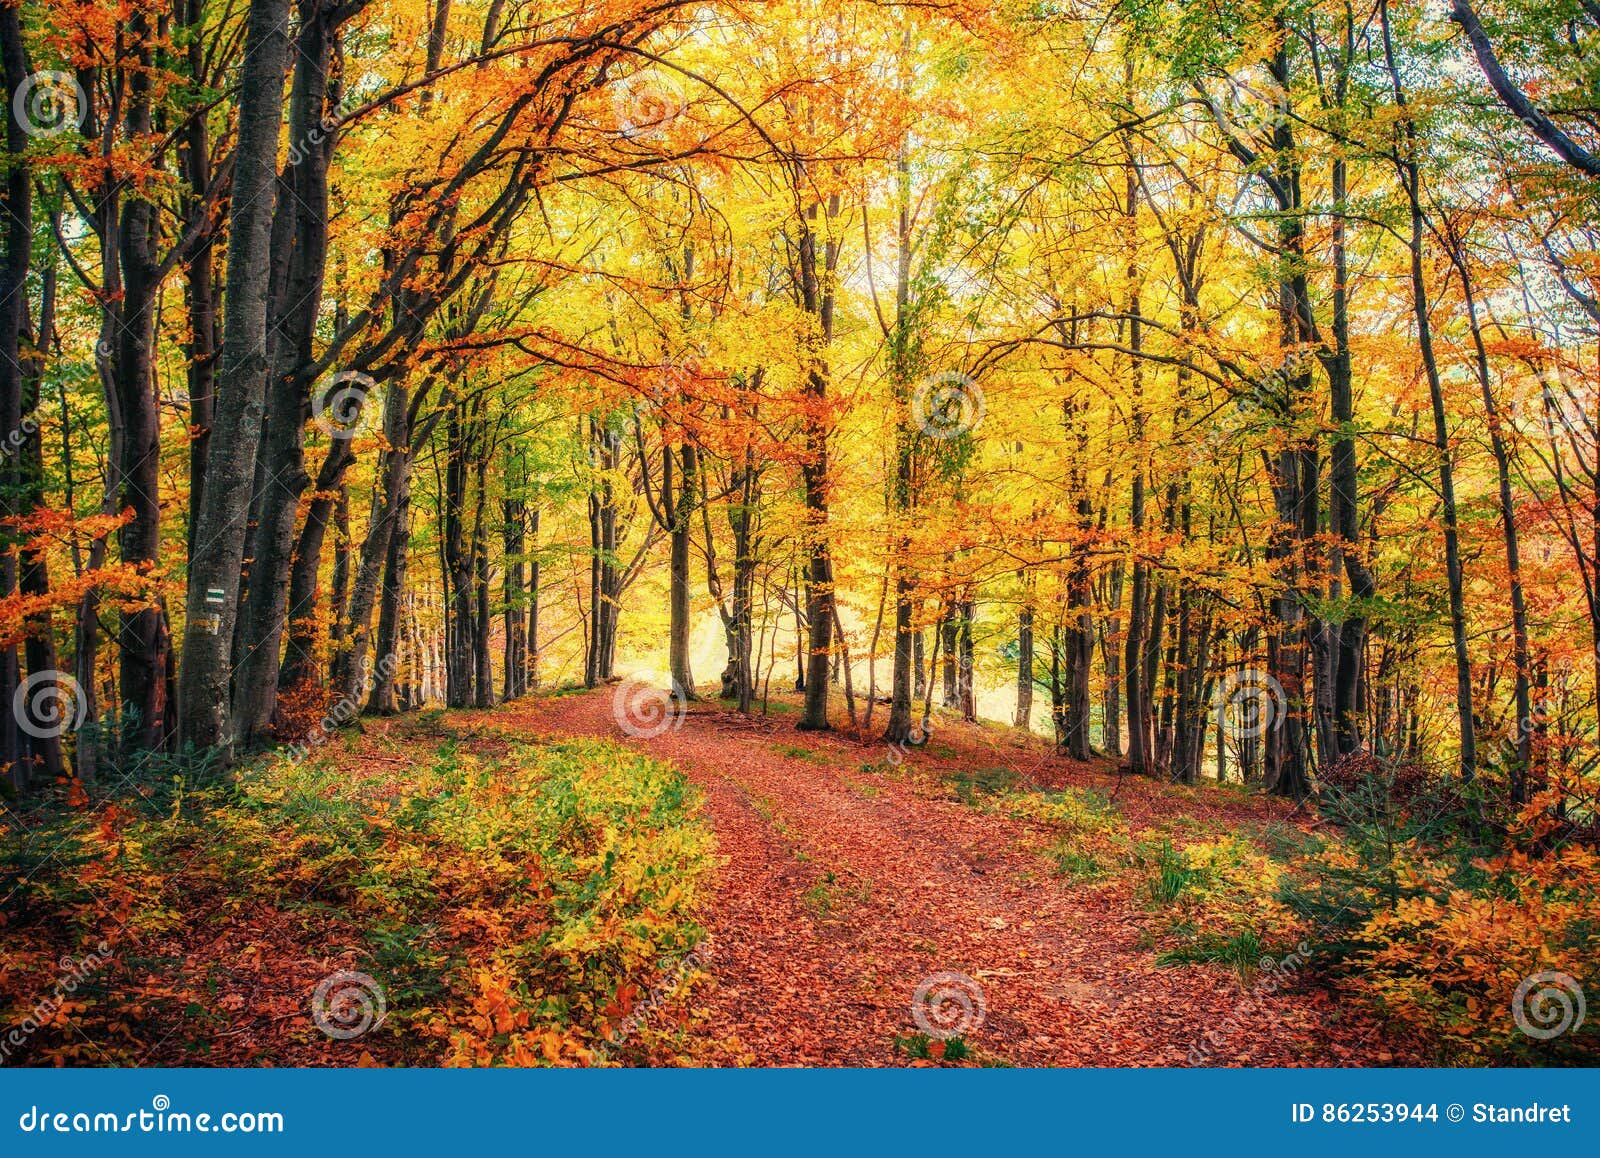 巴黎美丽的秋季公园 库存图片. 图片 包括有 户外, 自治权, 森林, 季节性, 晒裂, 欧洲, 没人 - 188513639